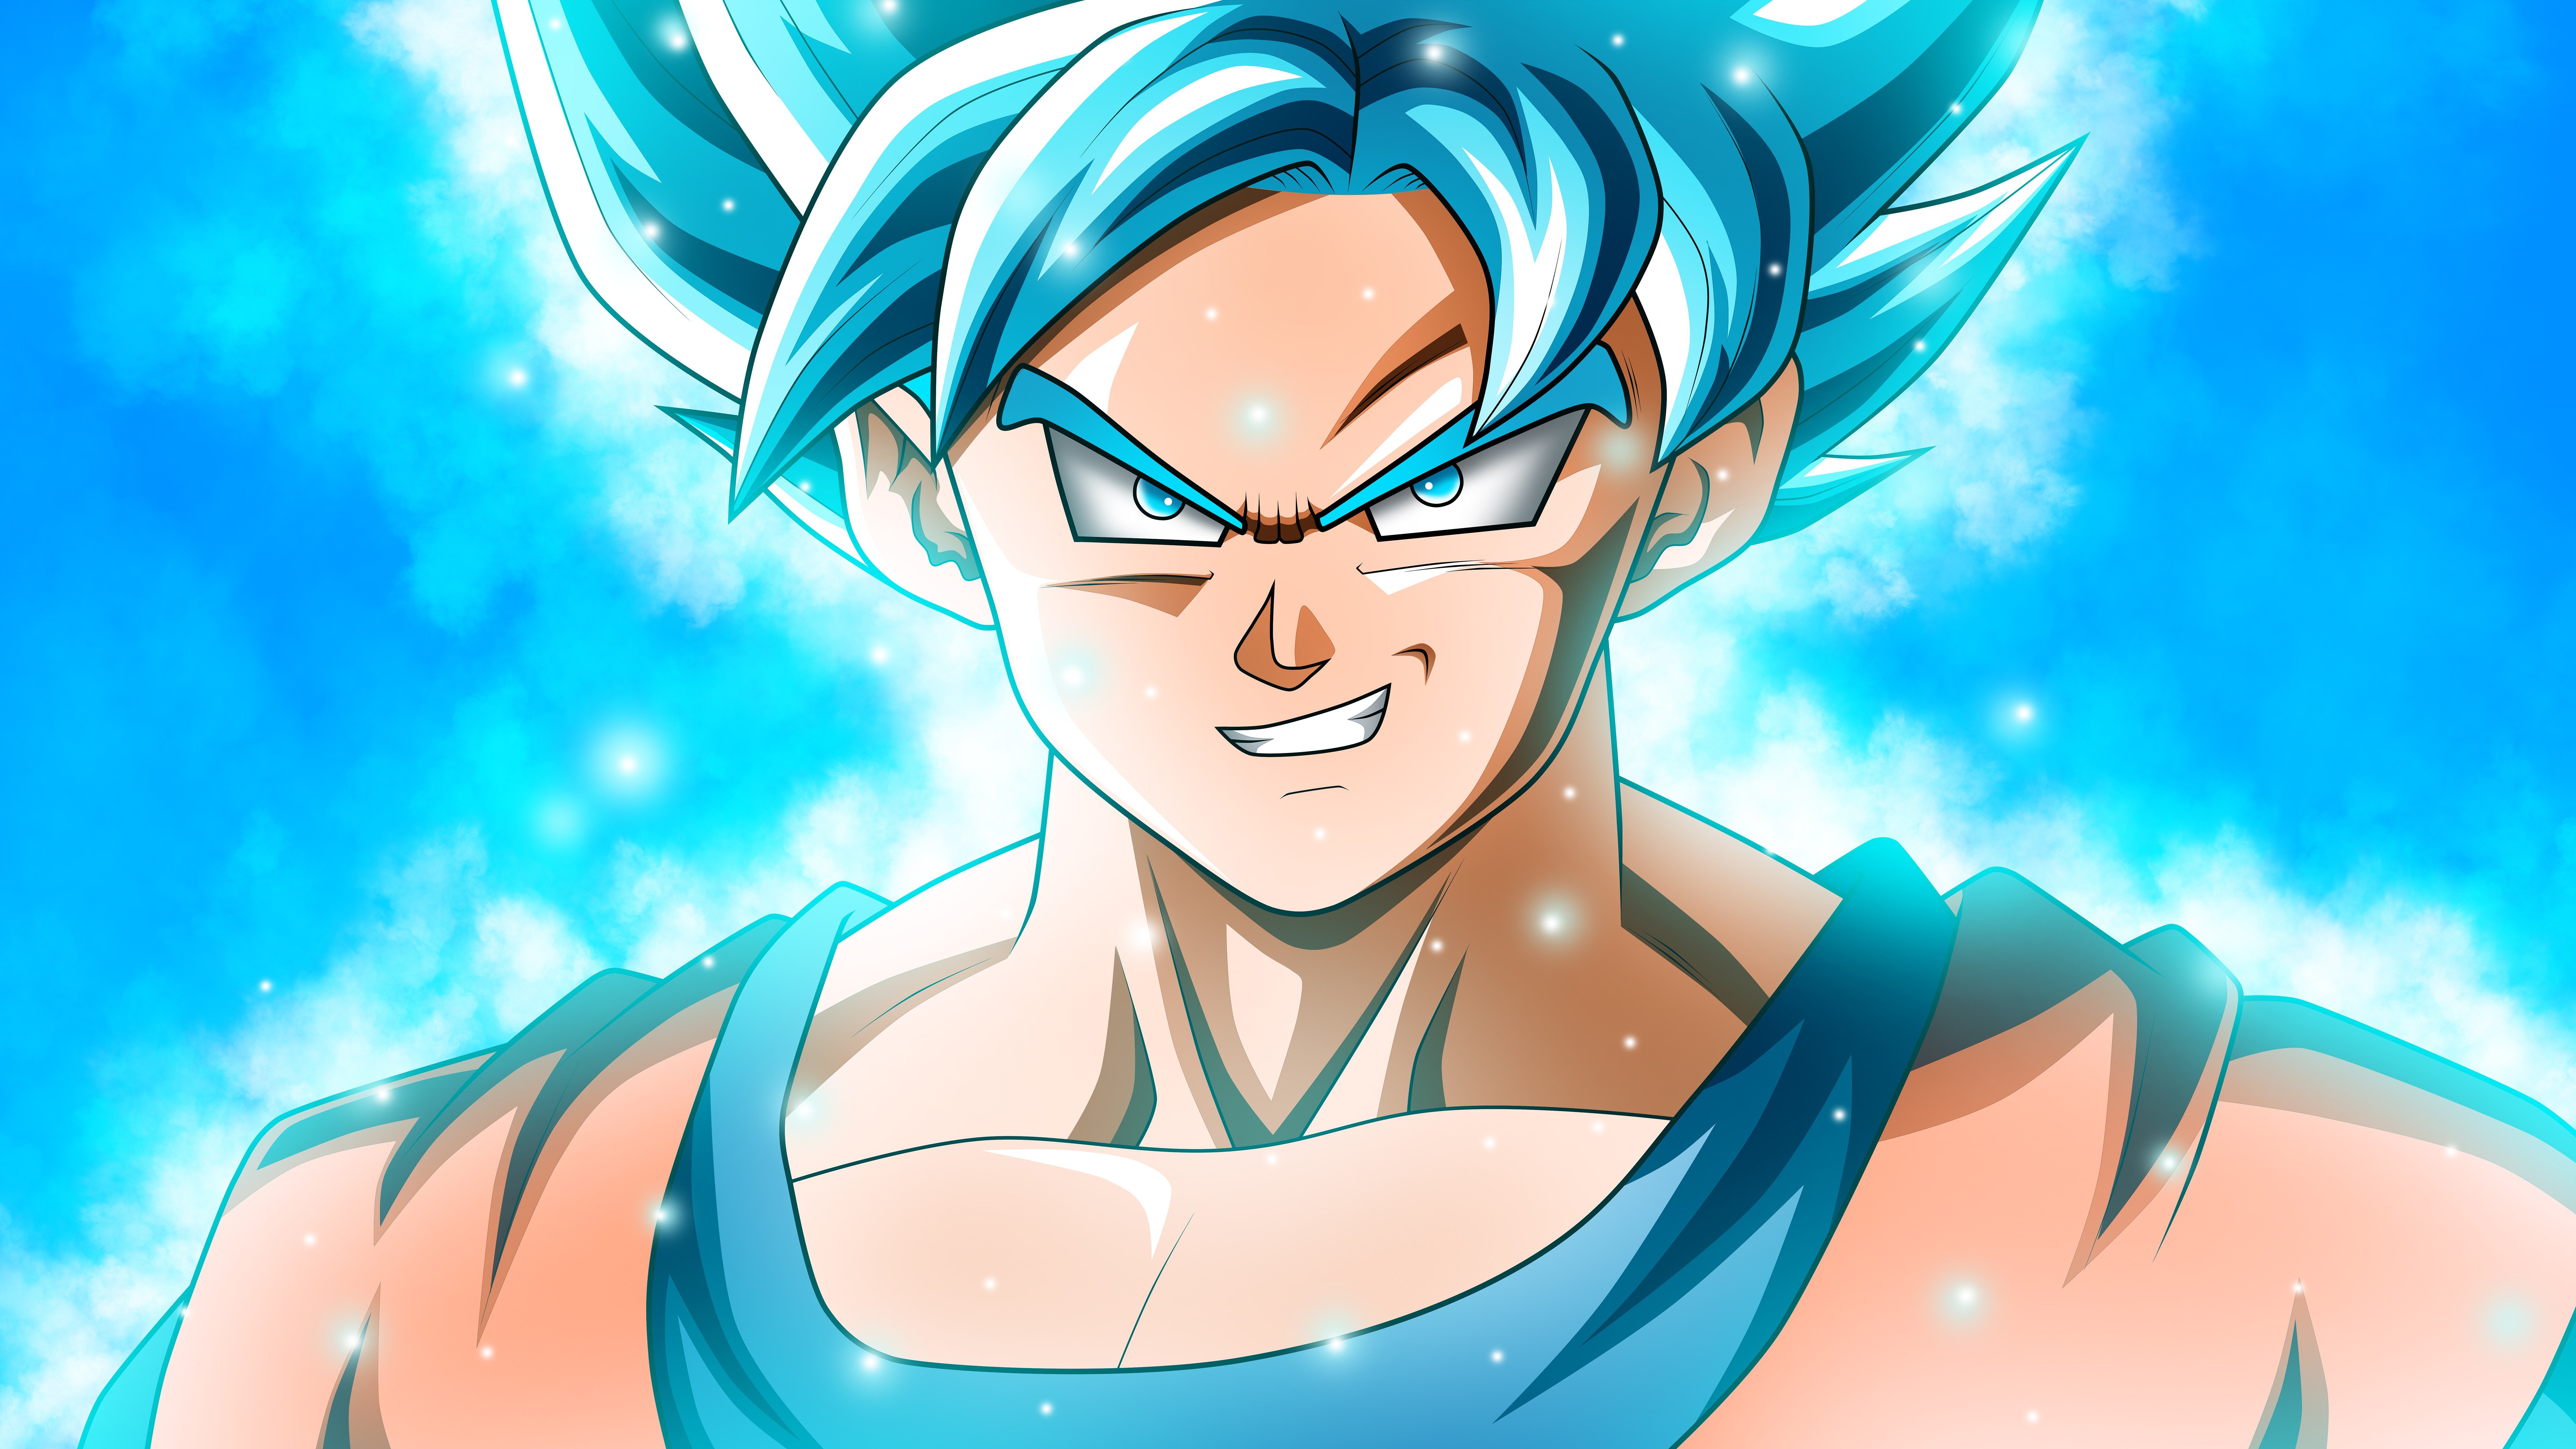 Fondos de pantalla Anime Goku Super Saiyan Blue de Dragon Ball Super